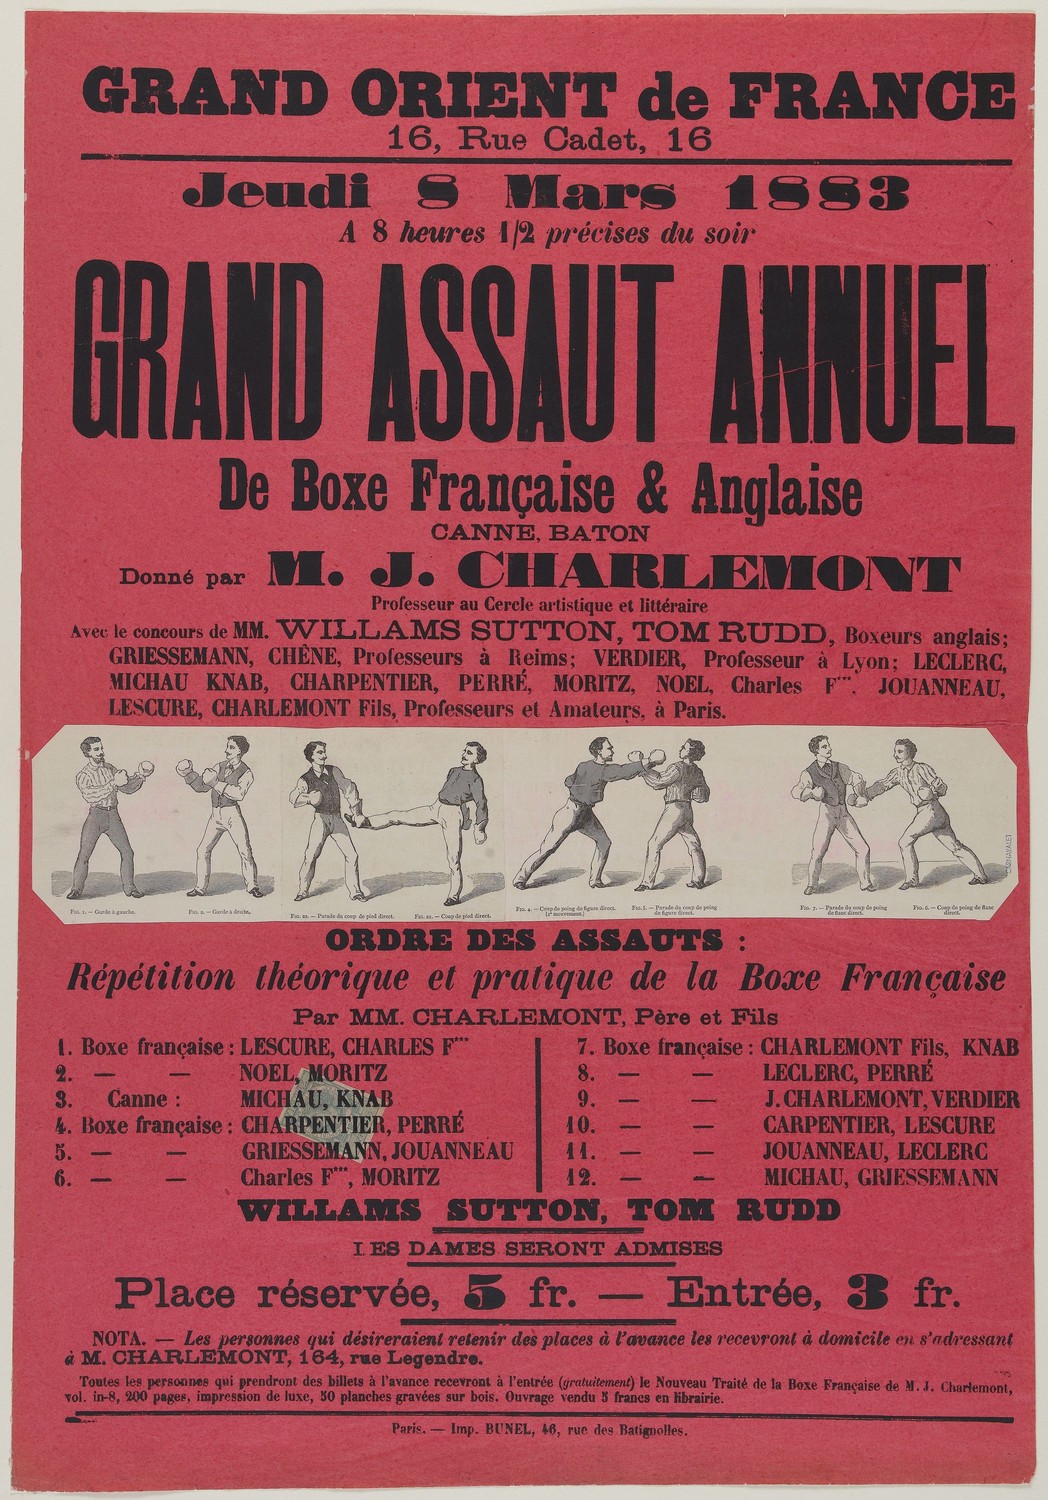 Affiche de 1883 annonçant le "Grand assaut annuel" de Boxe Française et Anglaise, canne et bâton donné par Joseph Charlemont (Paris Musées, Musée Carnavalet)